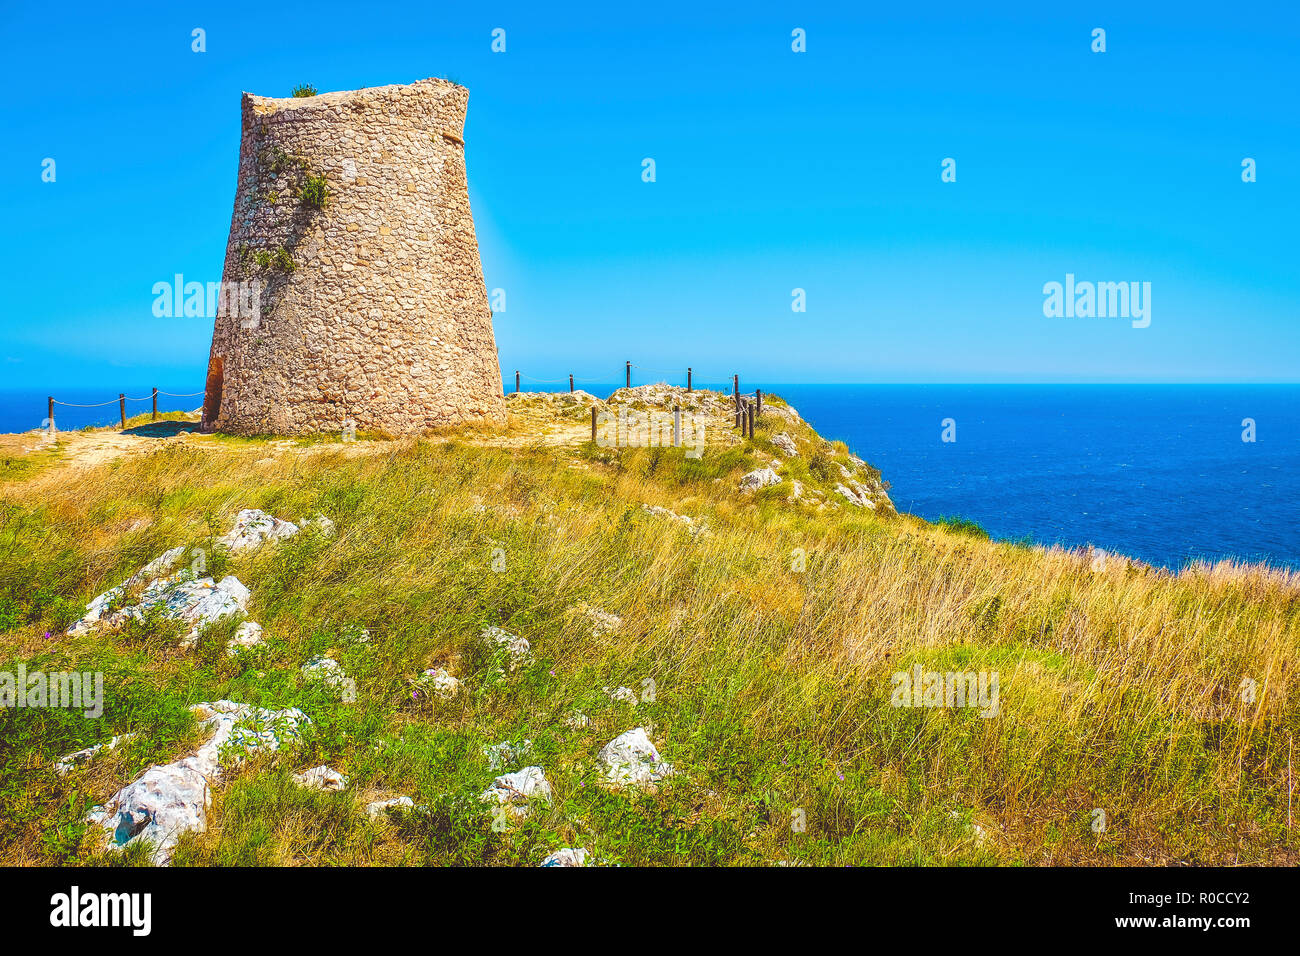 Salento countryside scenic watchtower coastal sea tower Sant Emiliano Otranto Apulia Italy Stock Photo